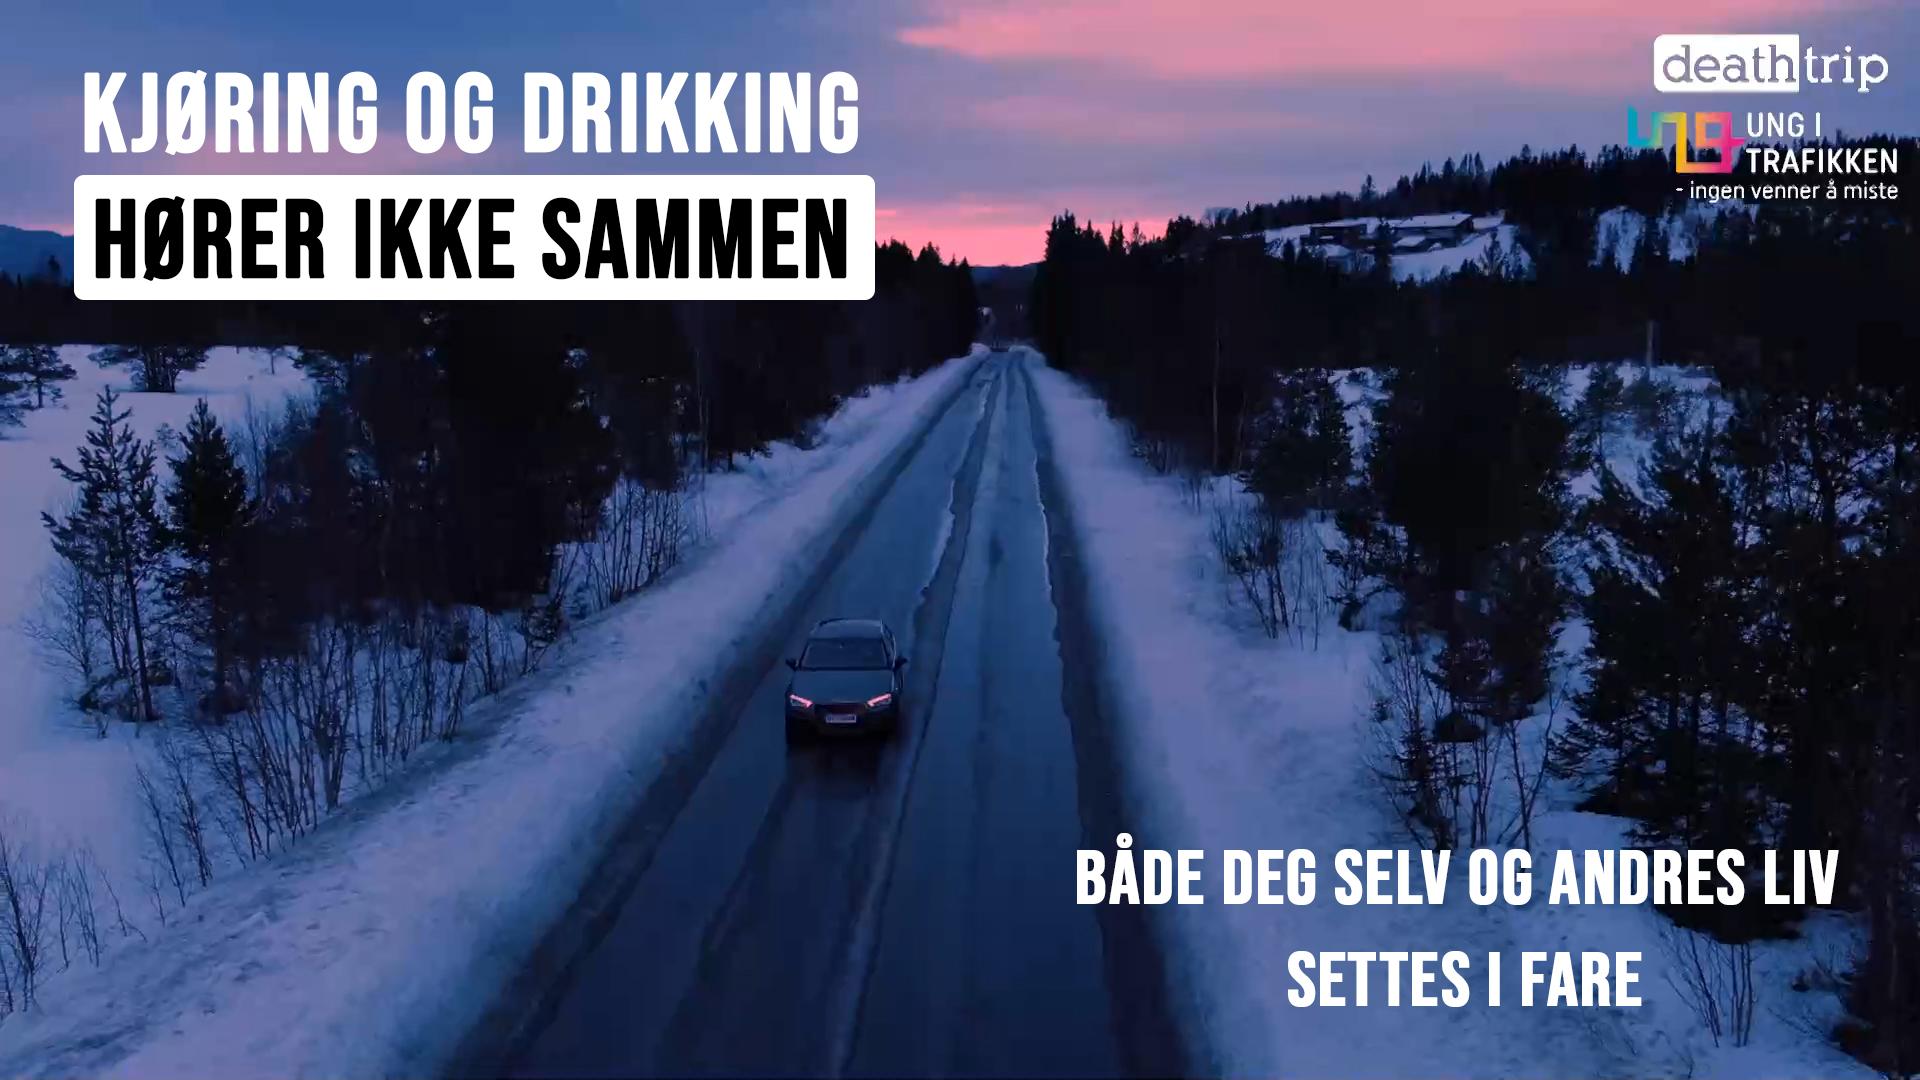 Plakat av landevei med tekst: Kjøring og drikking hører ikke sammen.